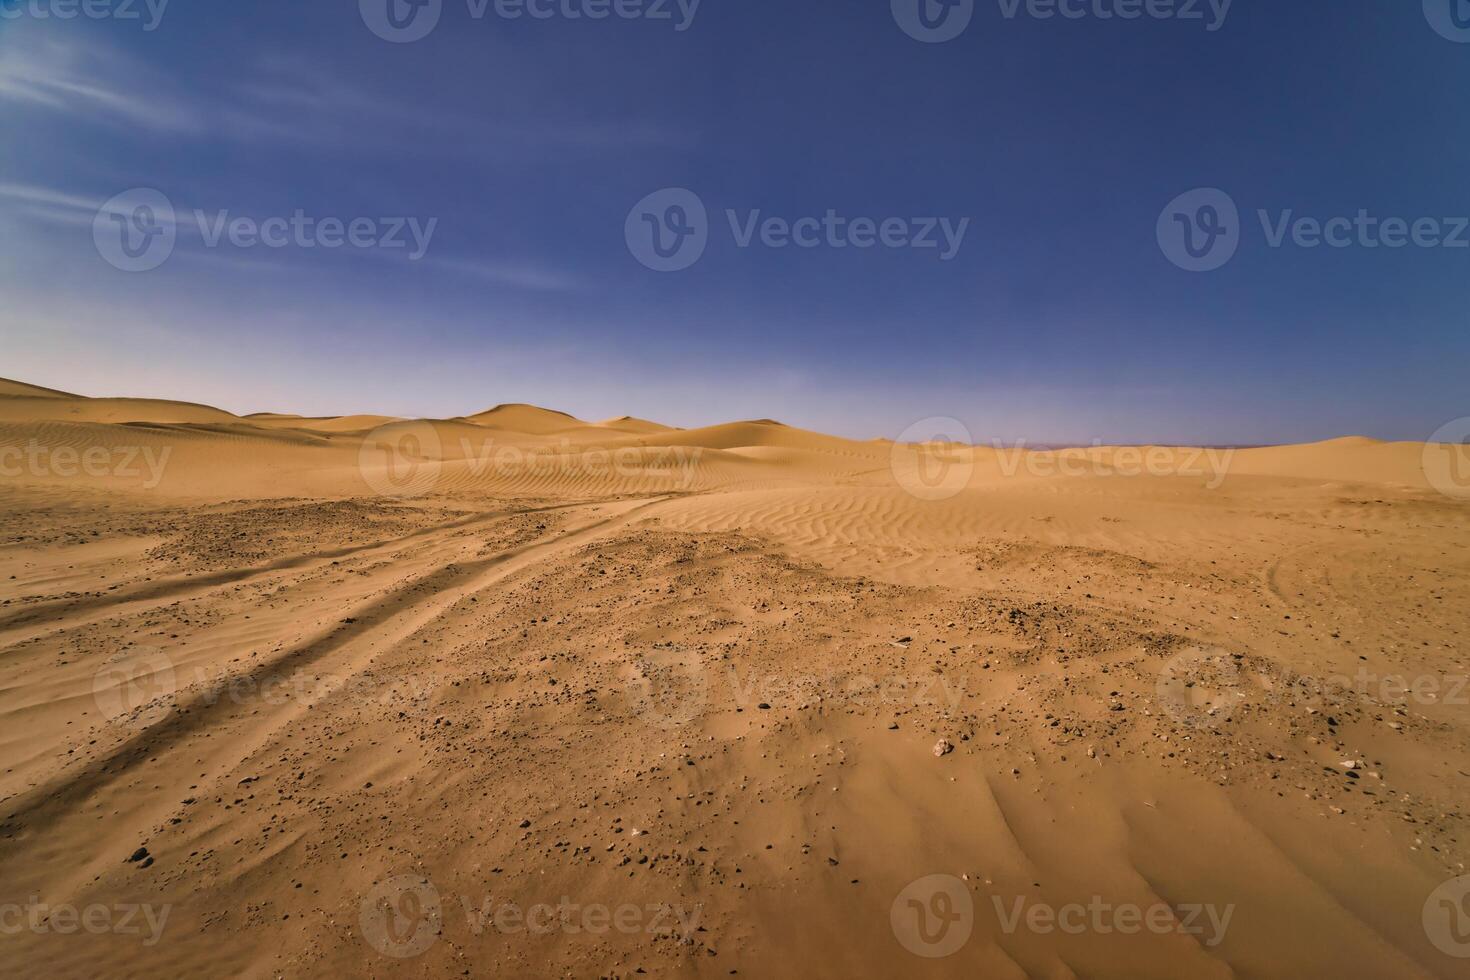 een panoramisch zand duin van Sahara woestijn Bij mhamid el gizlane in Marokko breed schot foto